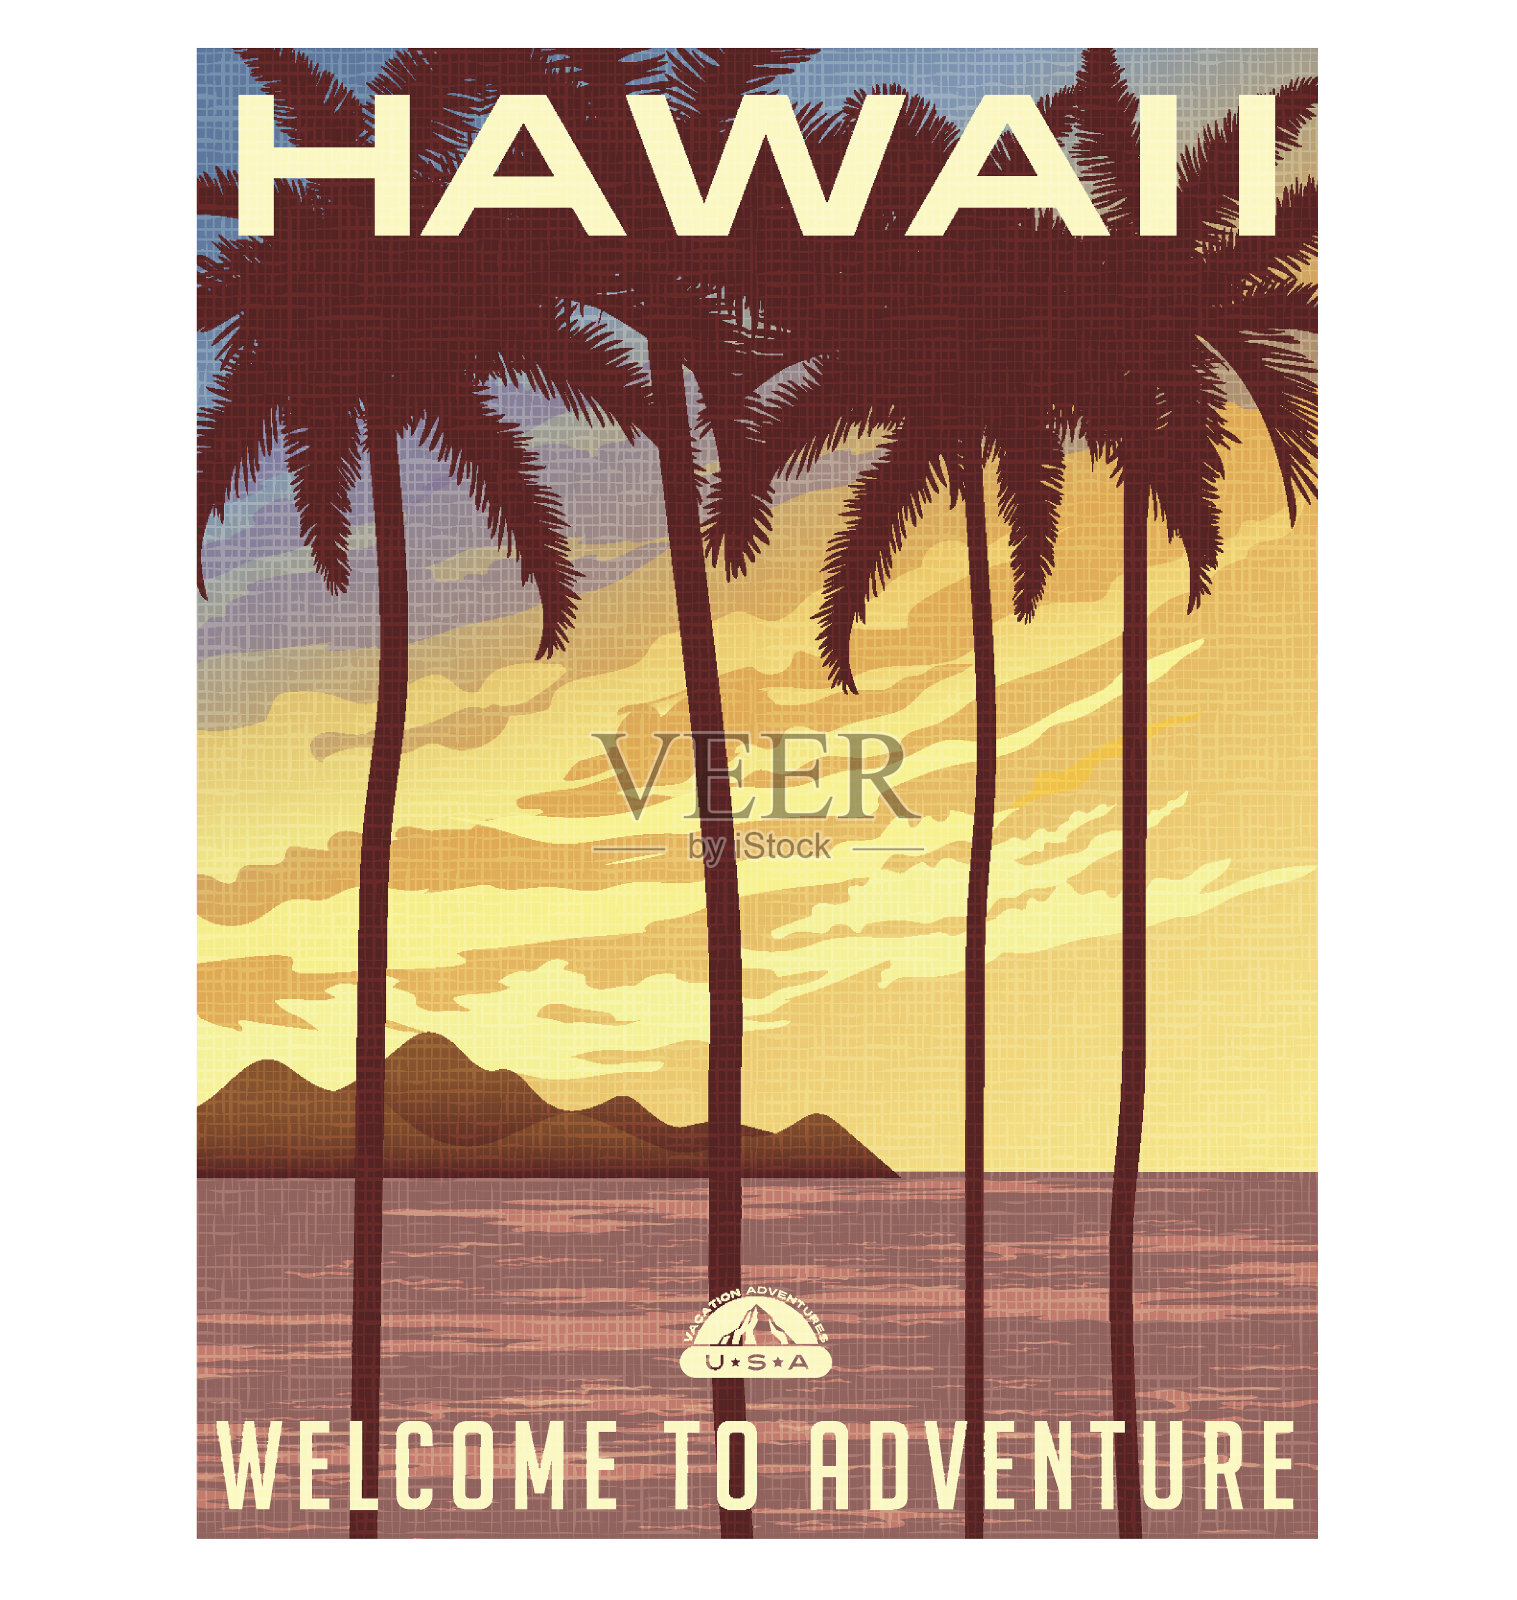 复古风格的旅行海报或贴纸。美国，夏威夷日落和棕榈树。插画图片素材